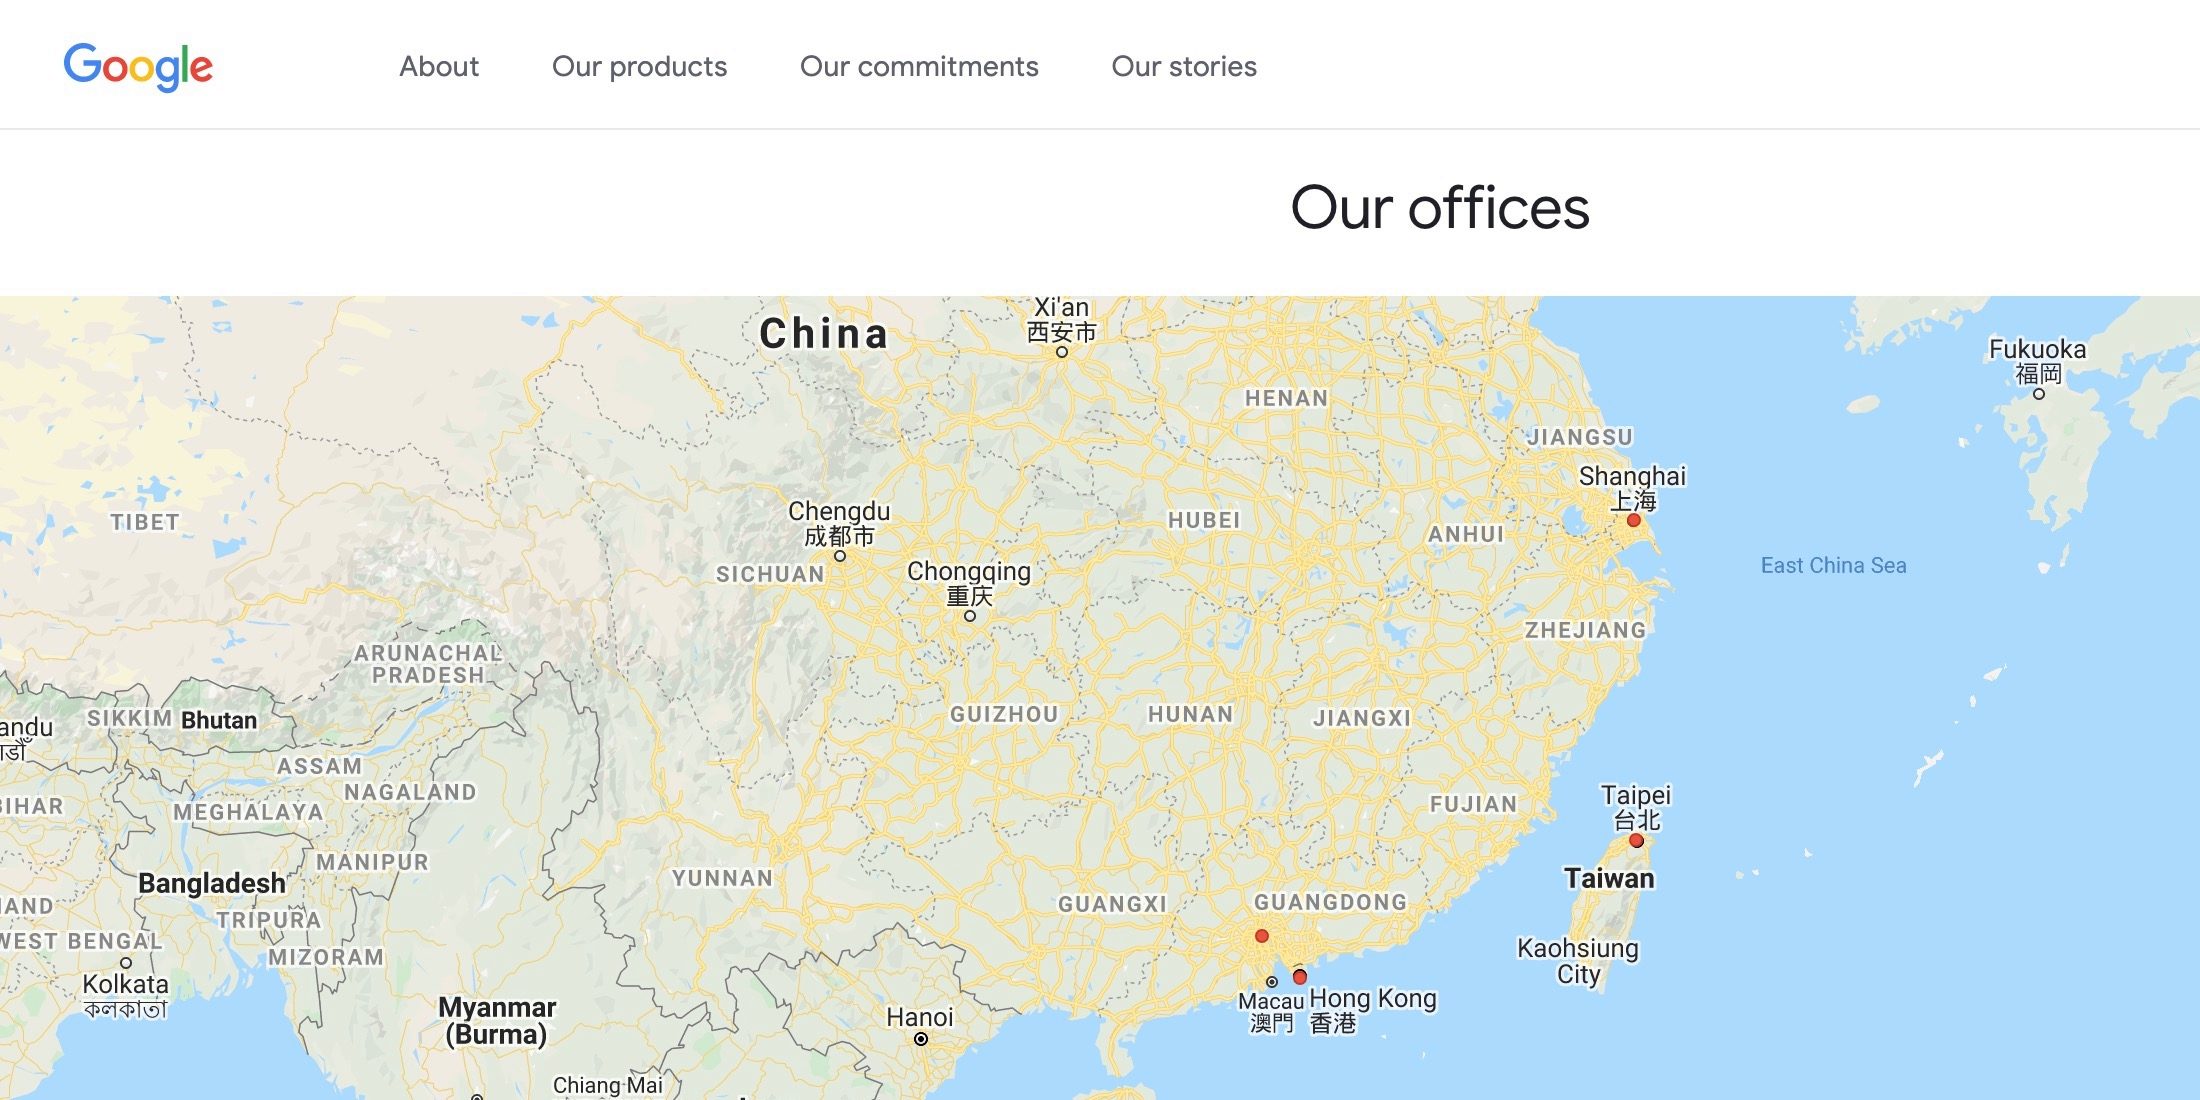 Google fecha temporariamente escritórios na China, Hong Kong e Taiwan devido a coronavírus